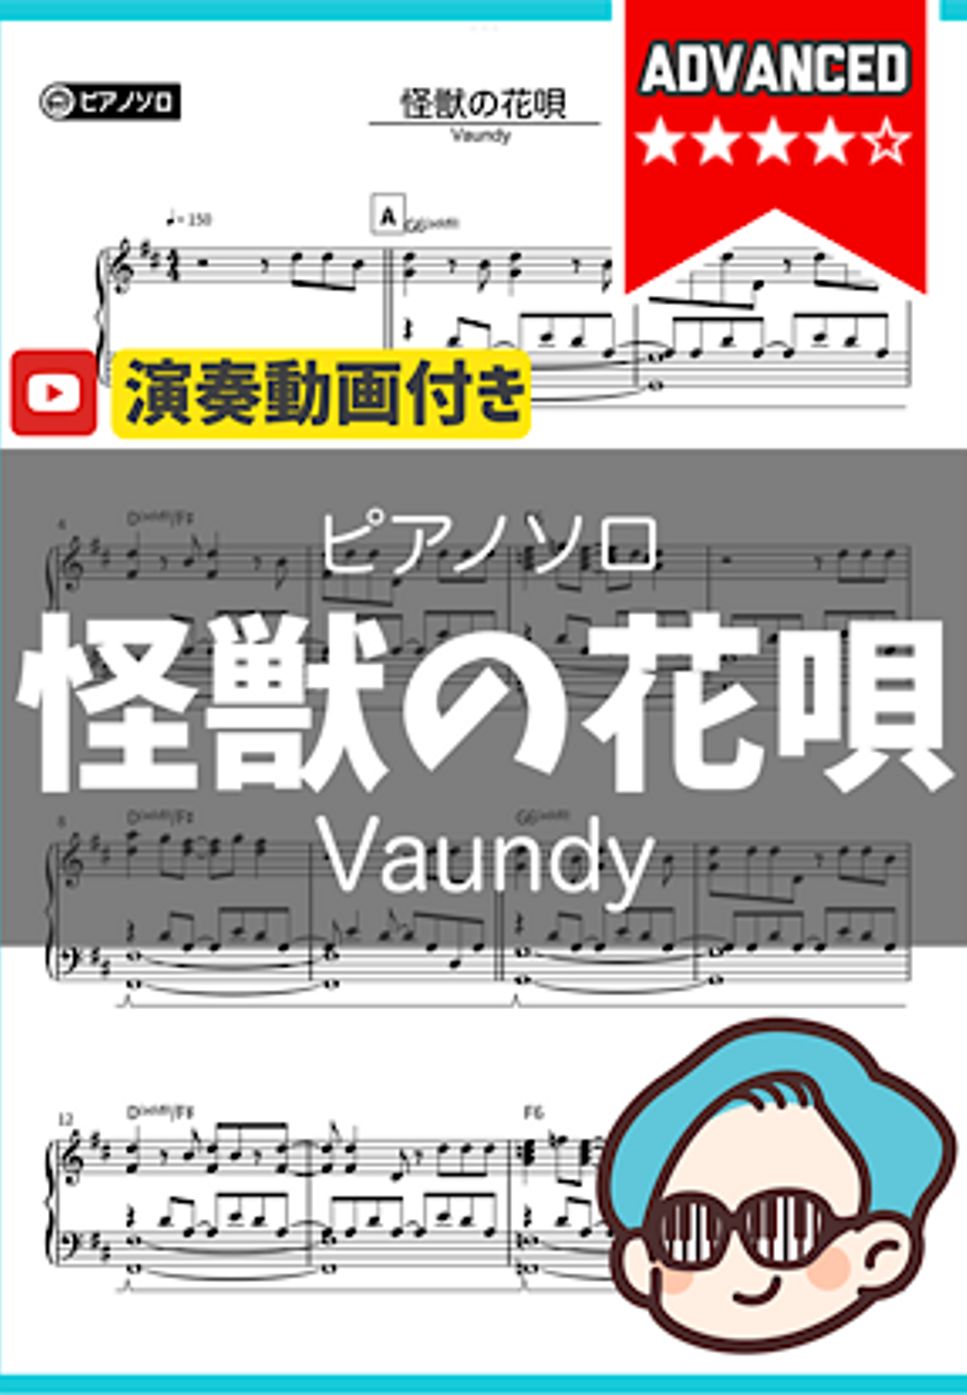 Vaundy - 怪獣の花唄 by シータピアノ